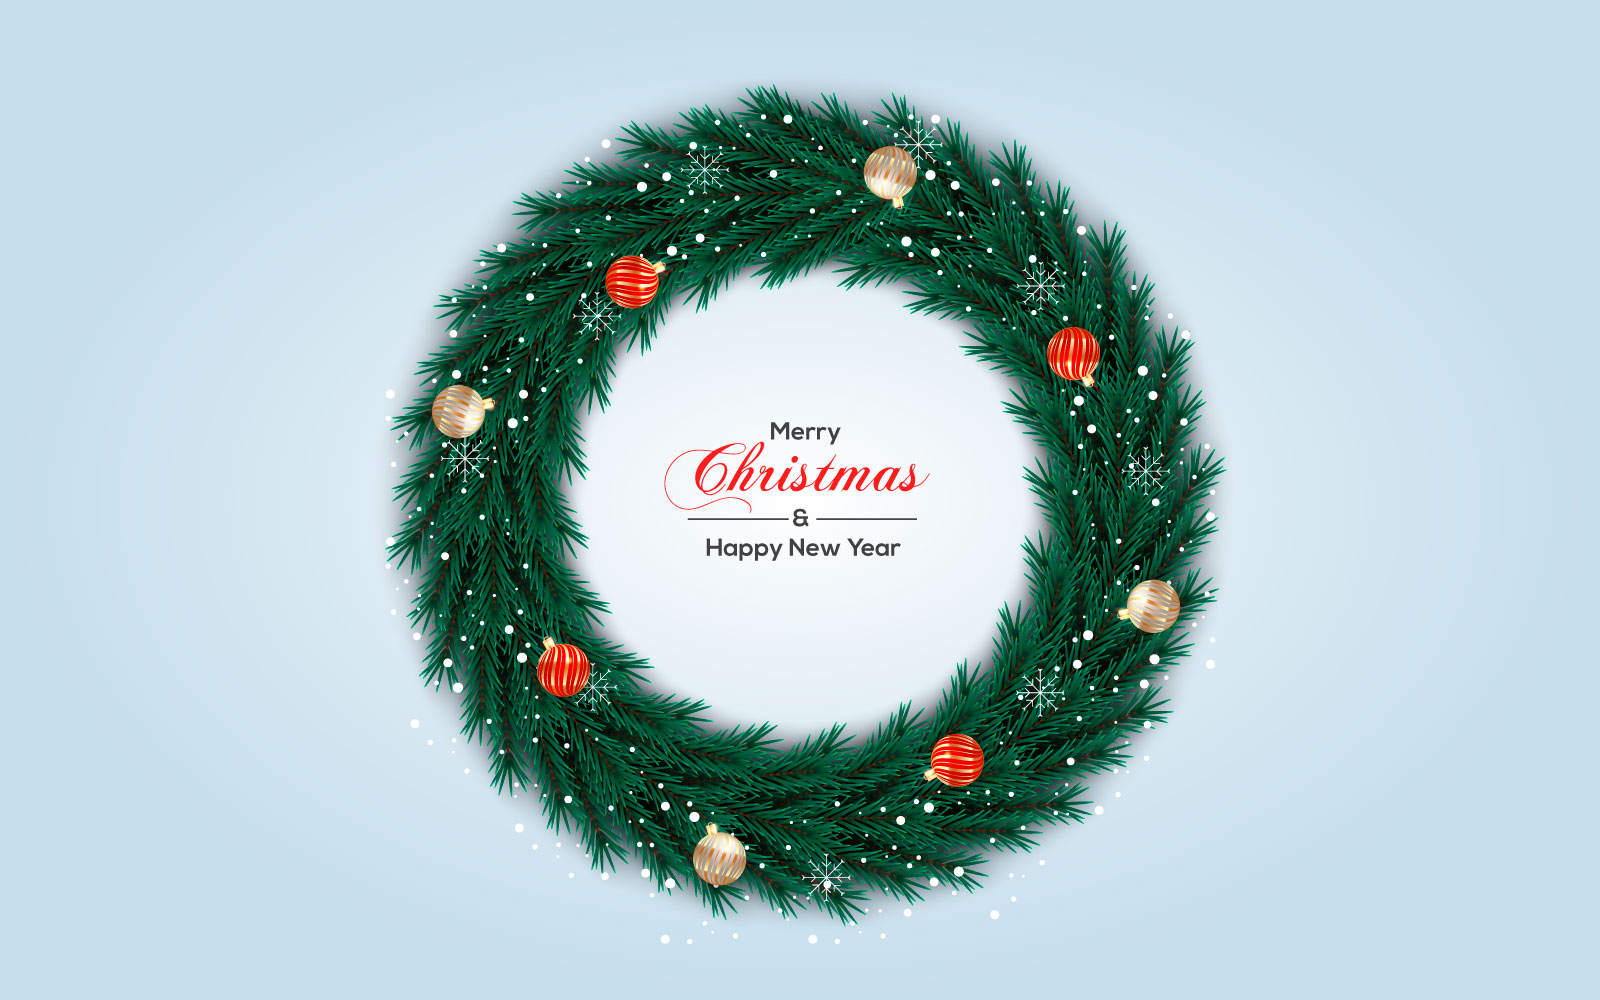 Christmas wreath vector concept design. merry christmas text in grass wreath element design